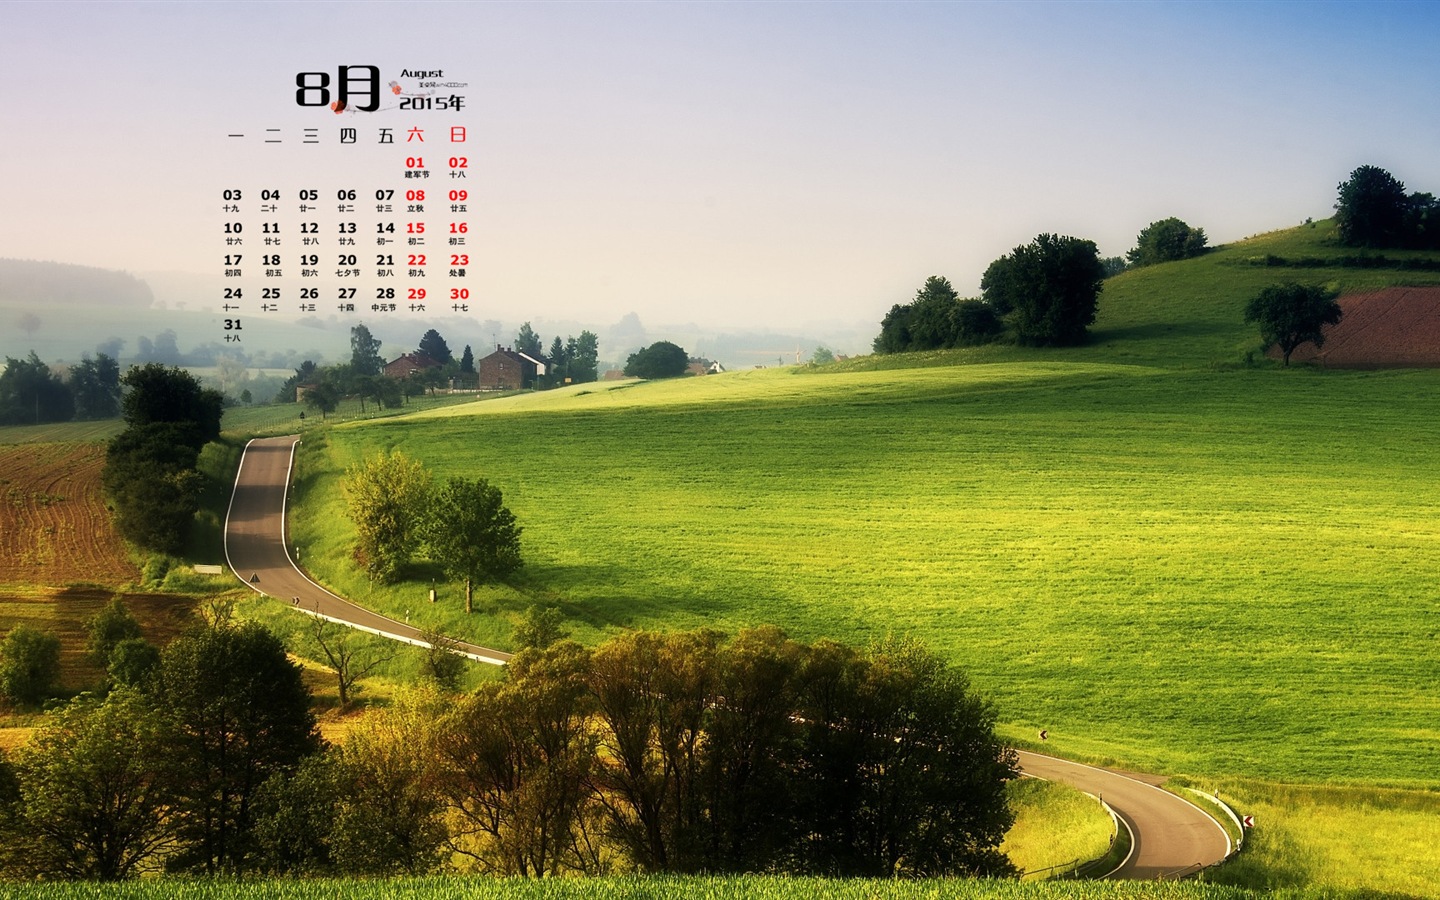 08. 2015 kalendář tapety (1) #1 - 1440x900